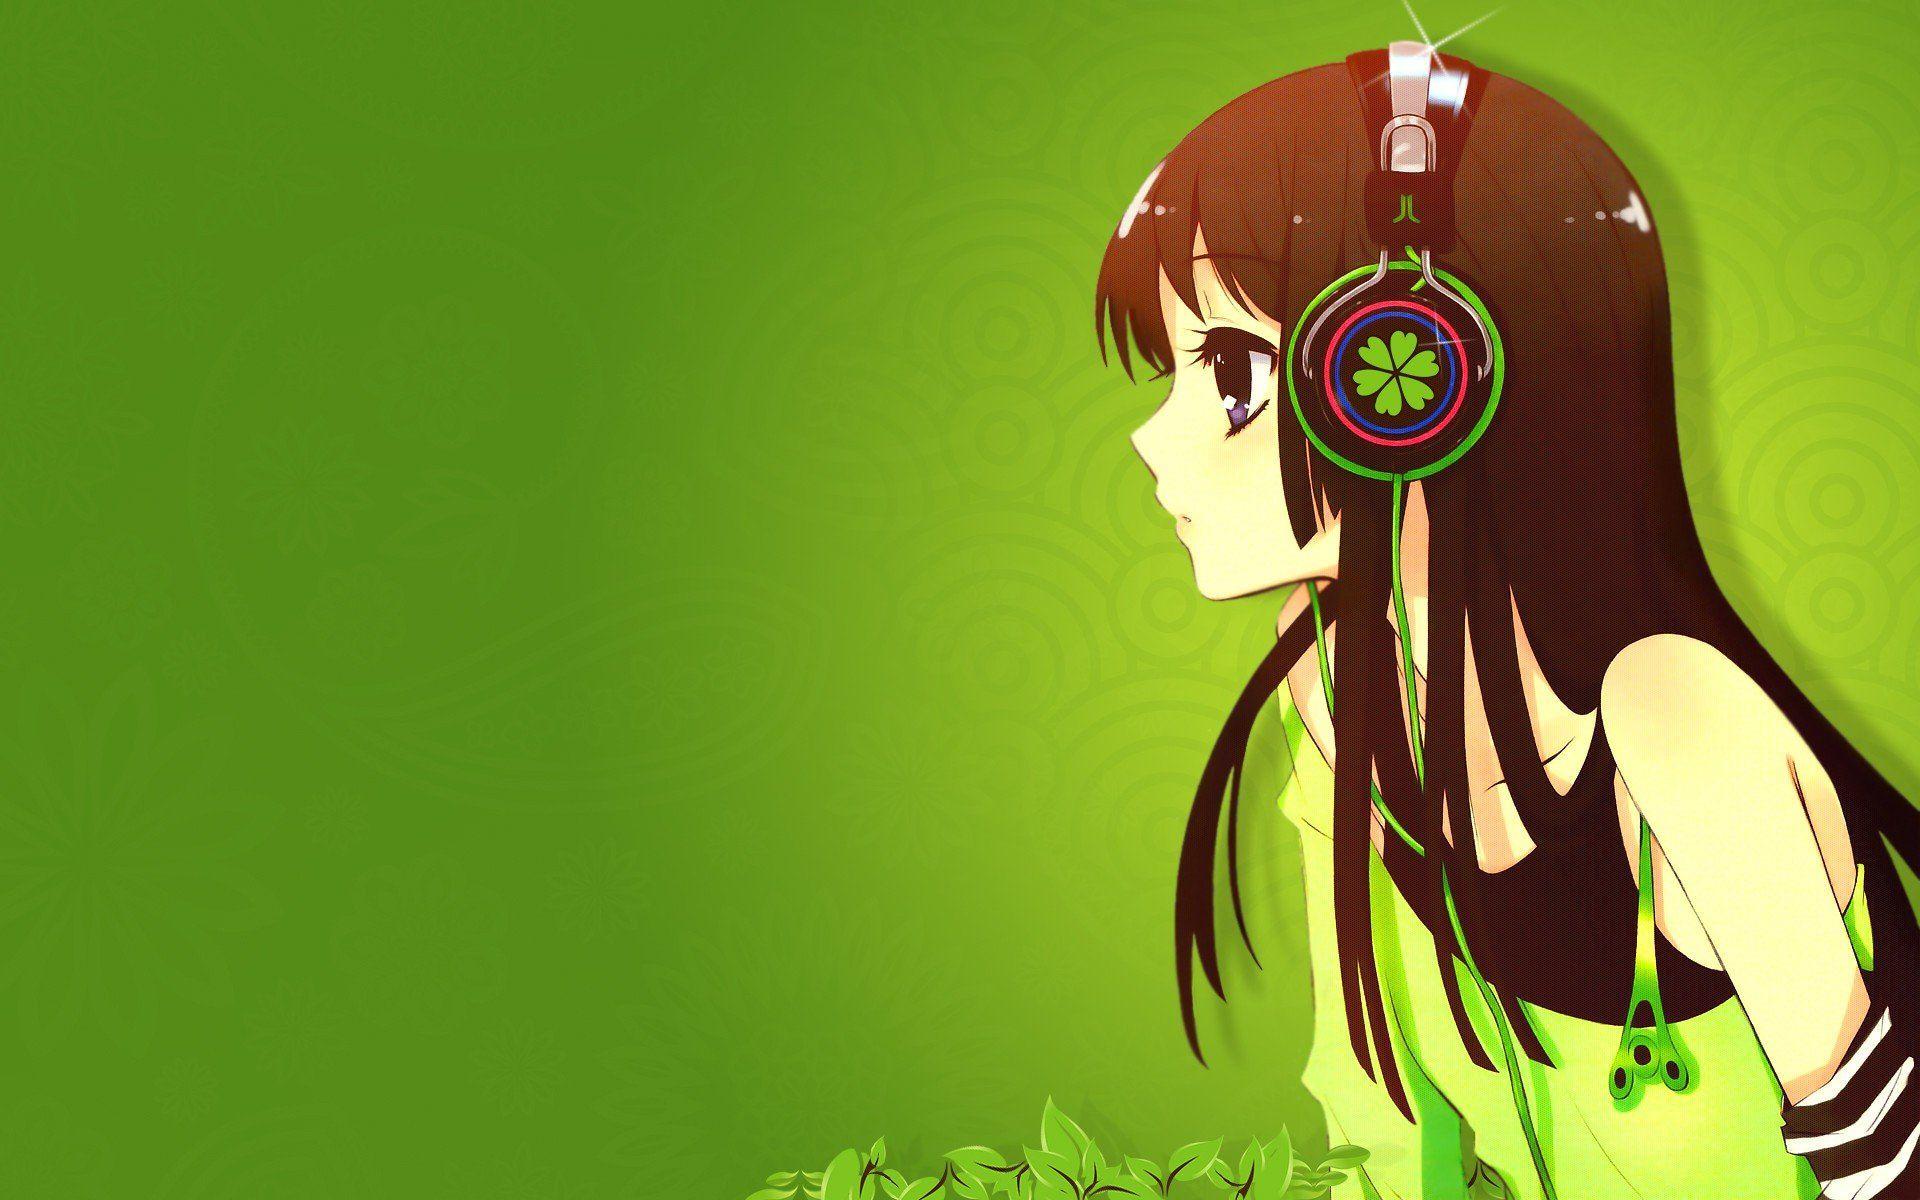 Hình nền anime với cô gái màu xanh lá cây sẽ khiến bạn phải trầm trồ vì độ đẹp của nó. Hình ảnh cô gái ấy đáng yêu và tươi tắn, đủ sức để làm cho bất kỳ ai cũng phải thích thú và yêu thích. Hãy tải về và làm hình nền cho điện thoại của bạn để tận hưởng vẻ đẹp của nó nhé!